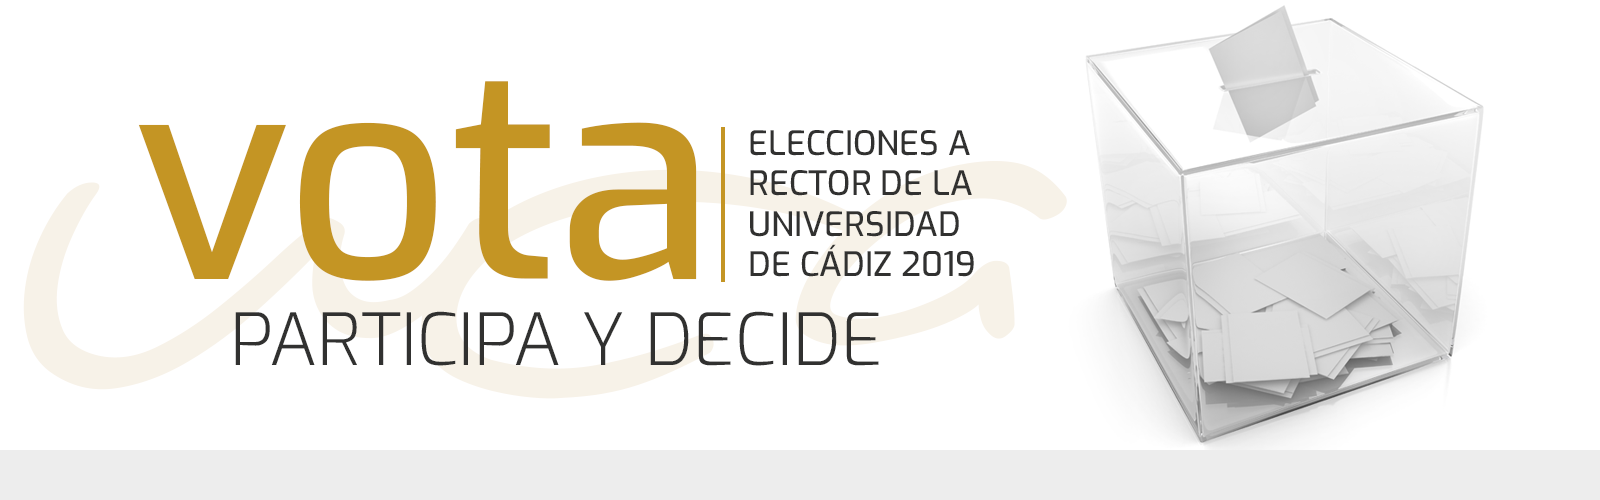 ELECCIONES A RECTOR 2019 – Votaciones segunda vuelta